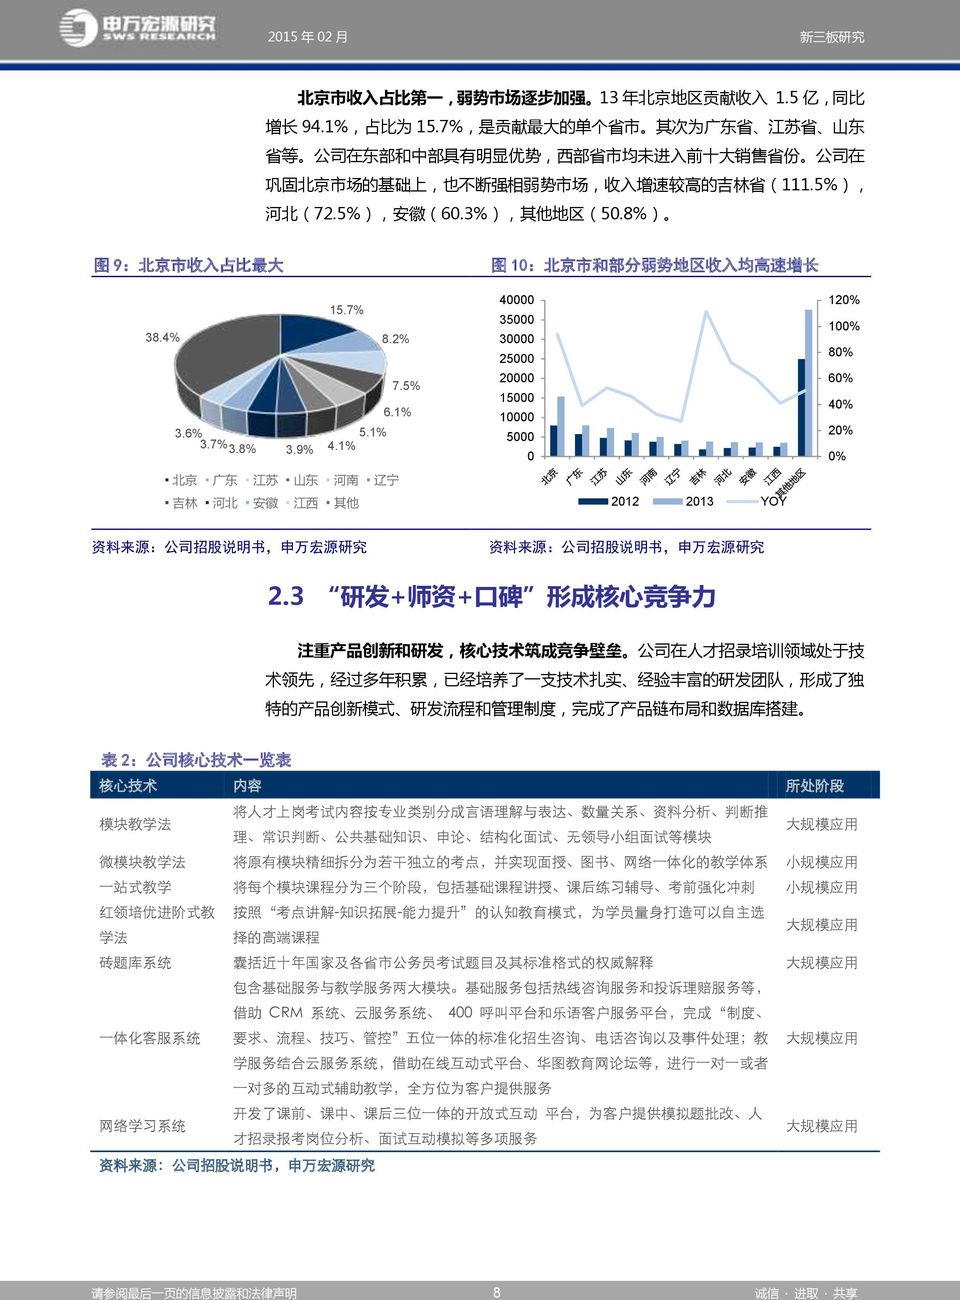 5%), 安 徽 (60.3%), 其 他 地 区 (50.8%) 图 9: 北 京 市 收 入 占 比 最 大 图 10: 北 京 市 和 部 分 弱 势 地 区 收 入 均 高 速 增 长 38.4% 3.6% 3.7% 3.8% 3.9% 15.7% 5.1% 4.1% 8.2% 7.5% 6.